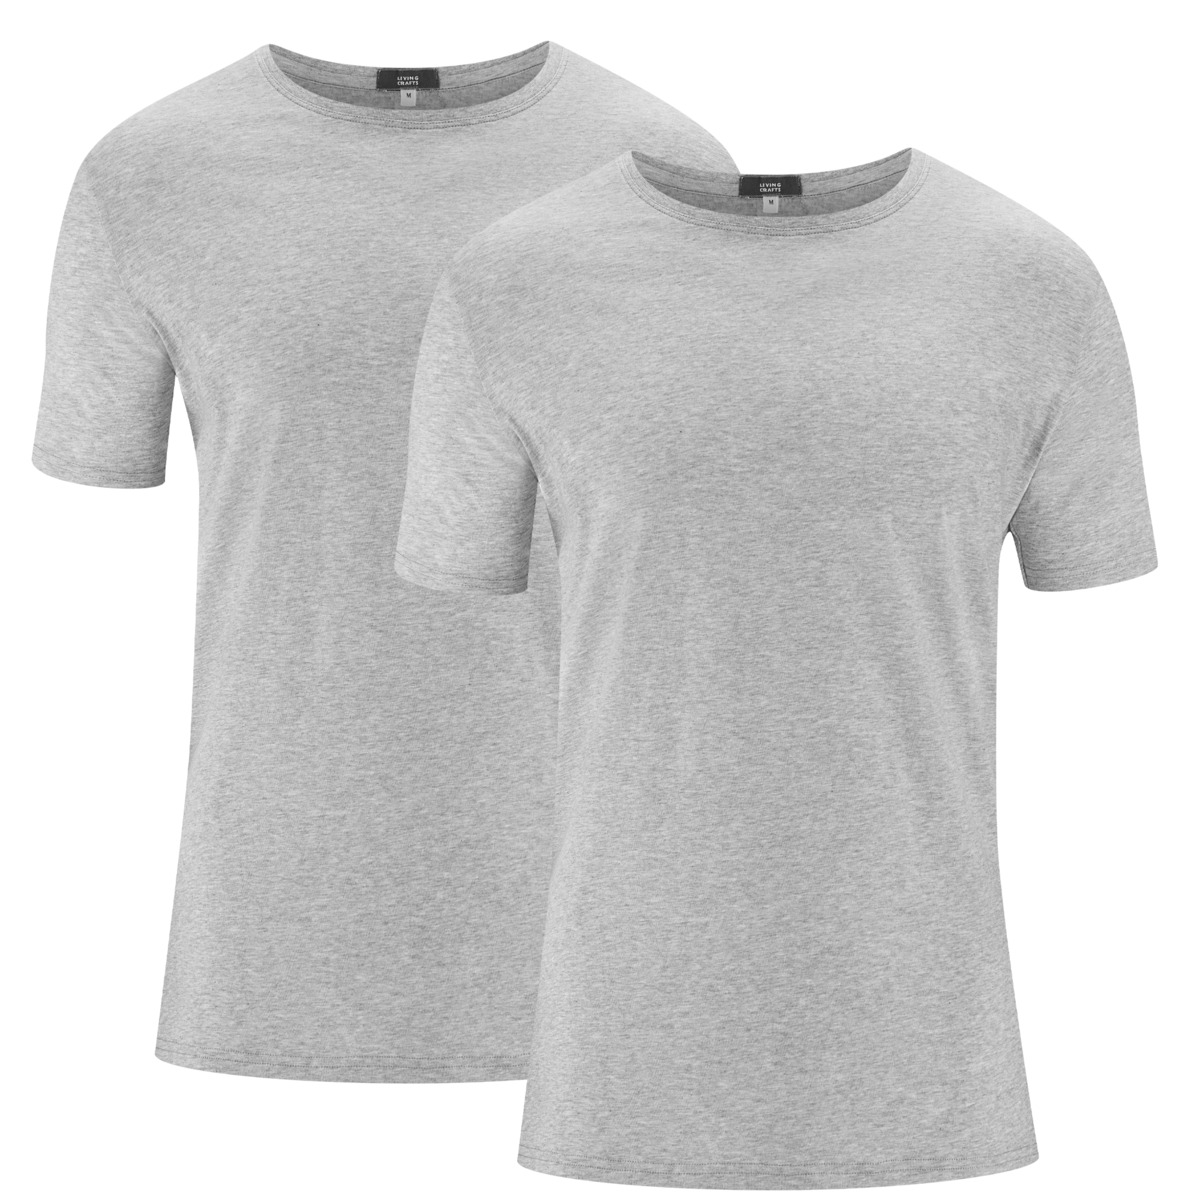 Grey T-shirt, pack of 2, FABIAN